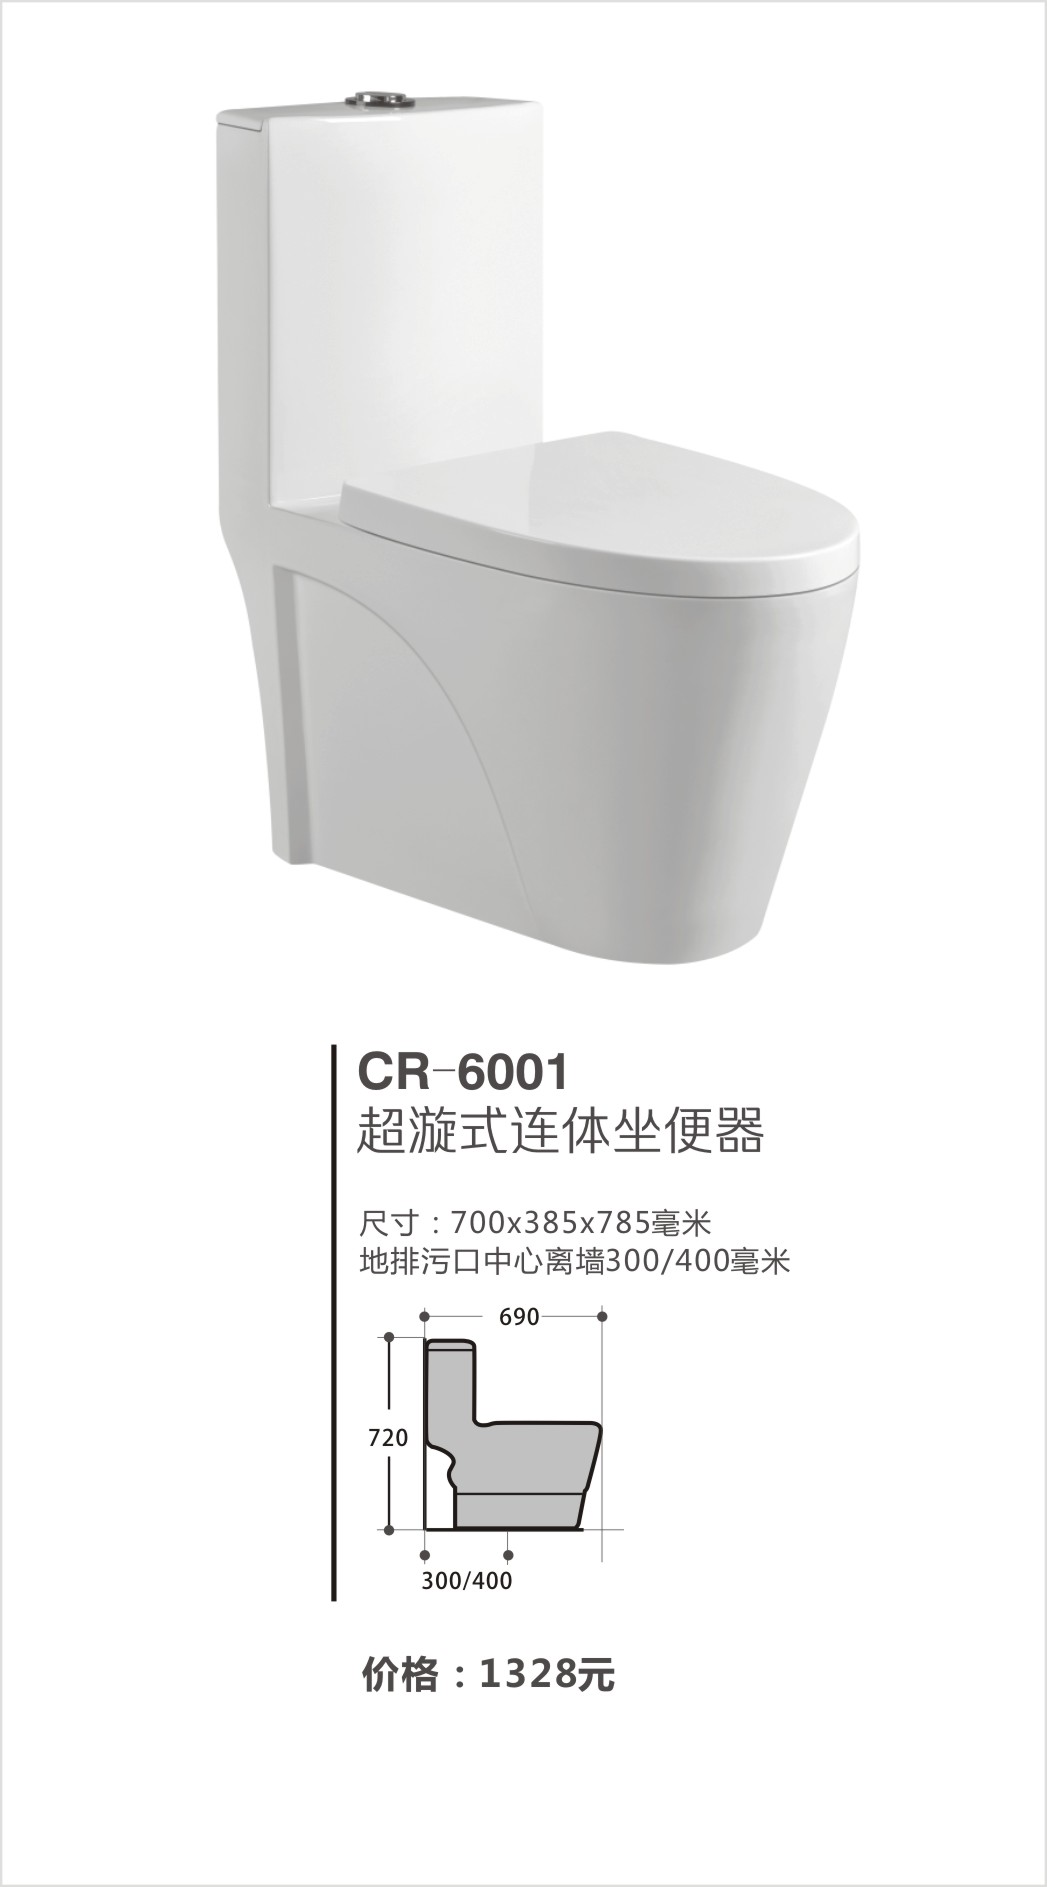 超人（chaoren）卫浴系列坐便器CR-6001